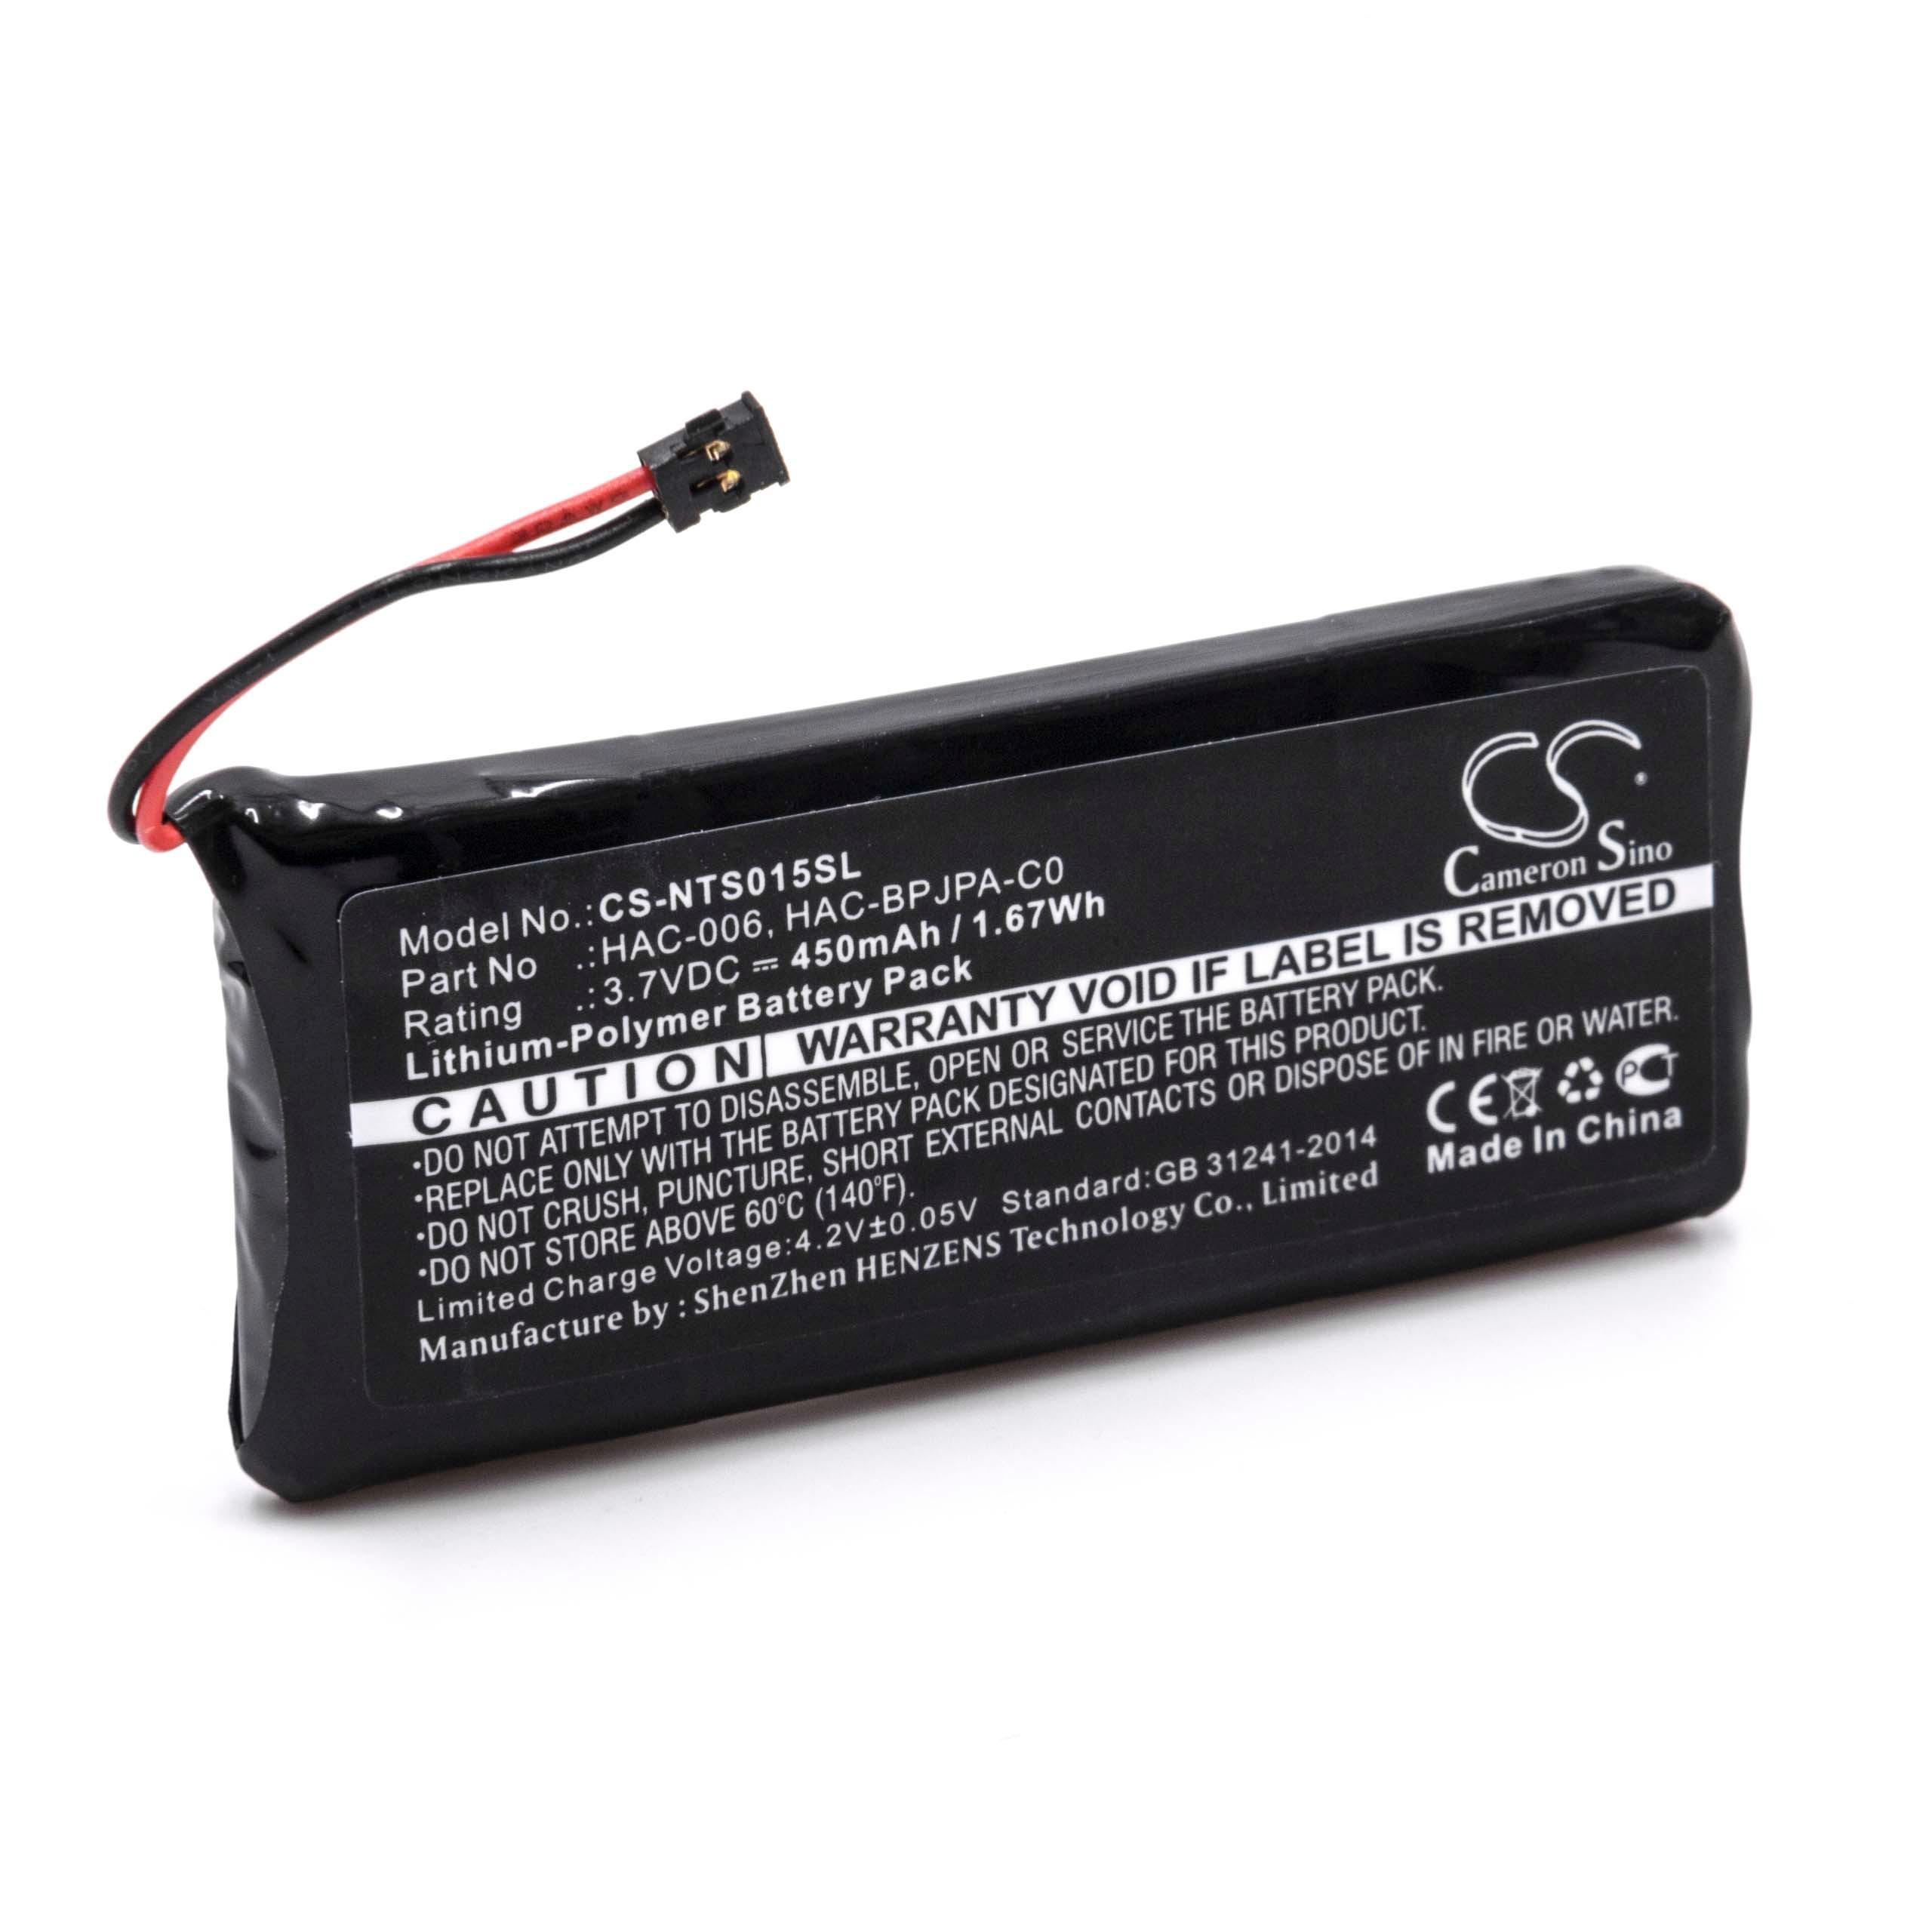 Batterie remplace Nintendo HAC-006 remplace Nintendo HAC-006 pour manette de jeu - 450mAh, 3,7V